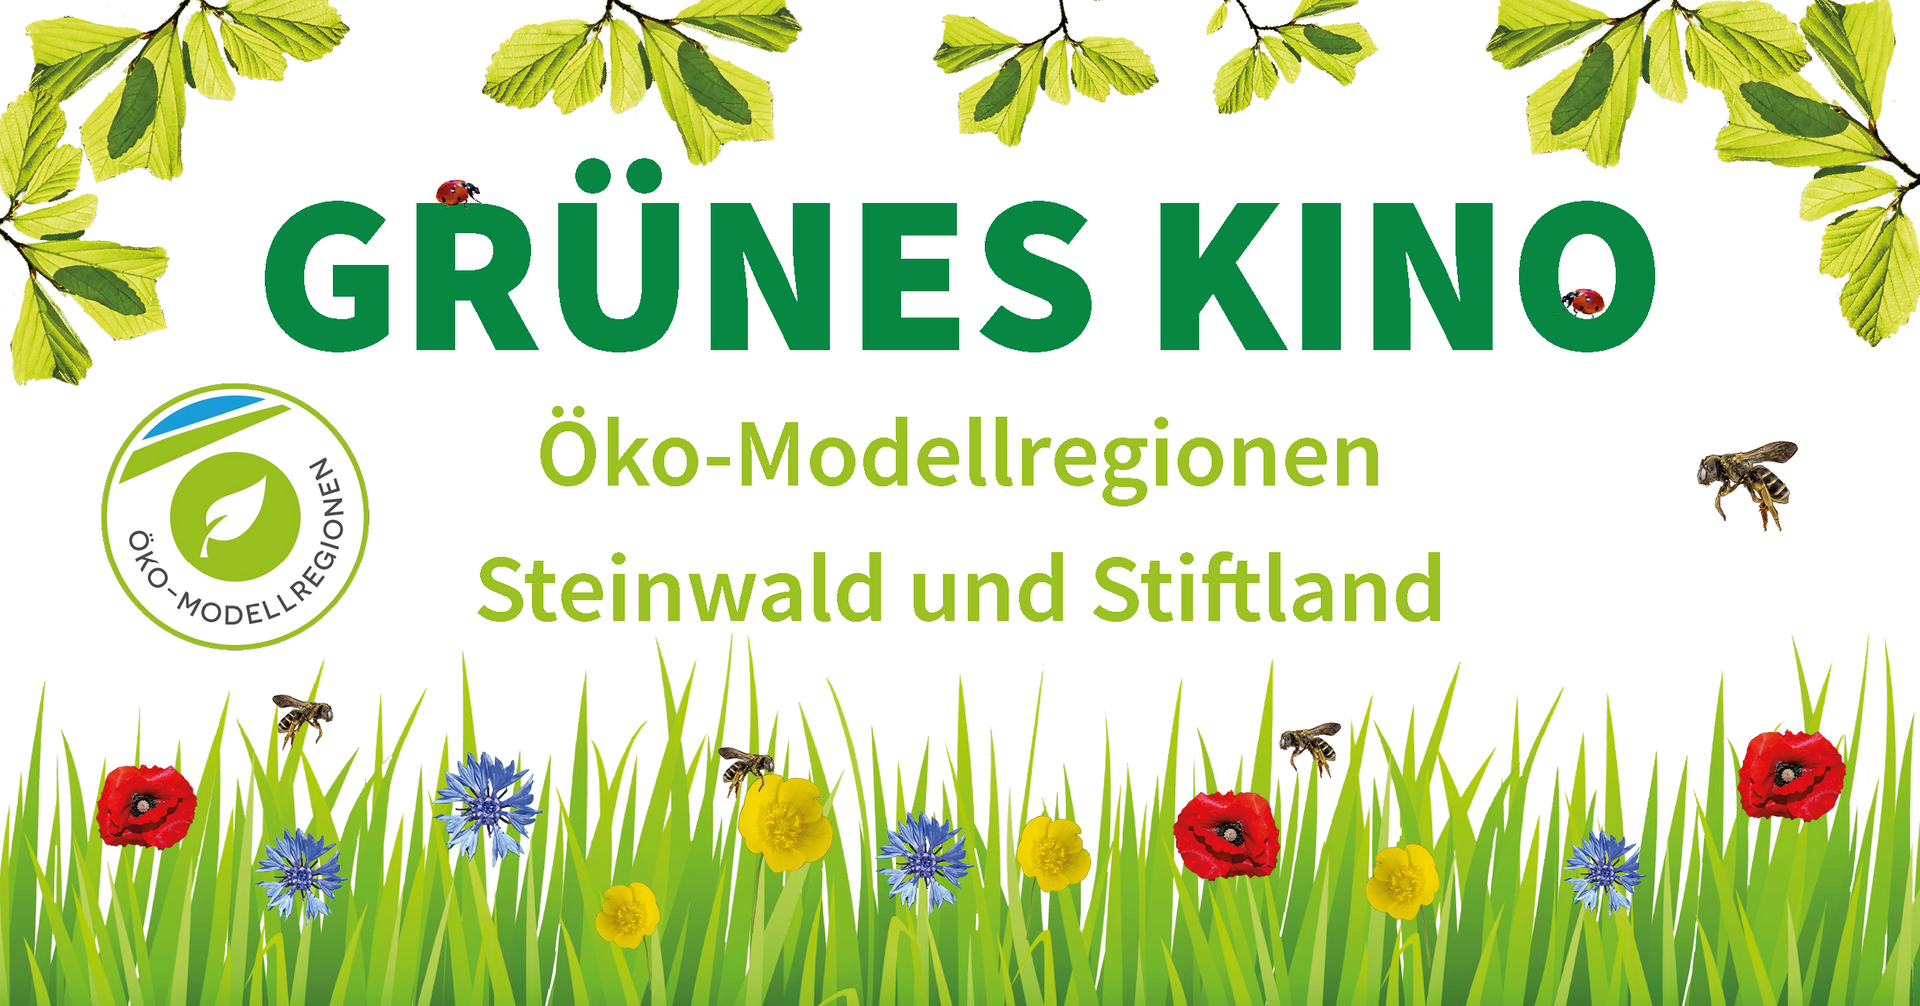 Grünes Kino, Öko-Modellregion, Steinwald, Stiftland, Biodiversität, ökologische Landwirtschaft, Bio, Nachhaltigkeit